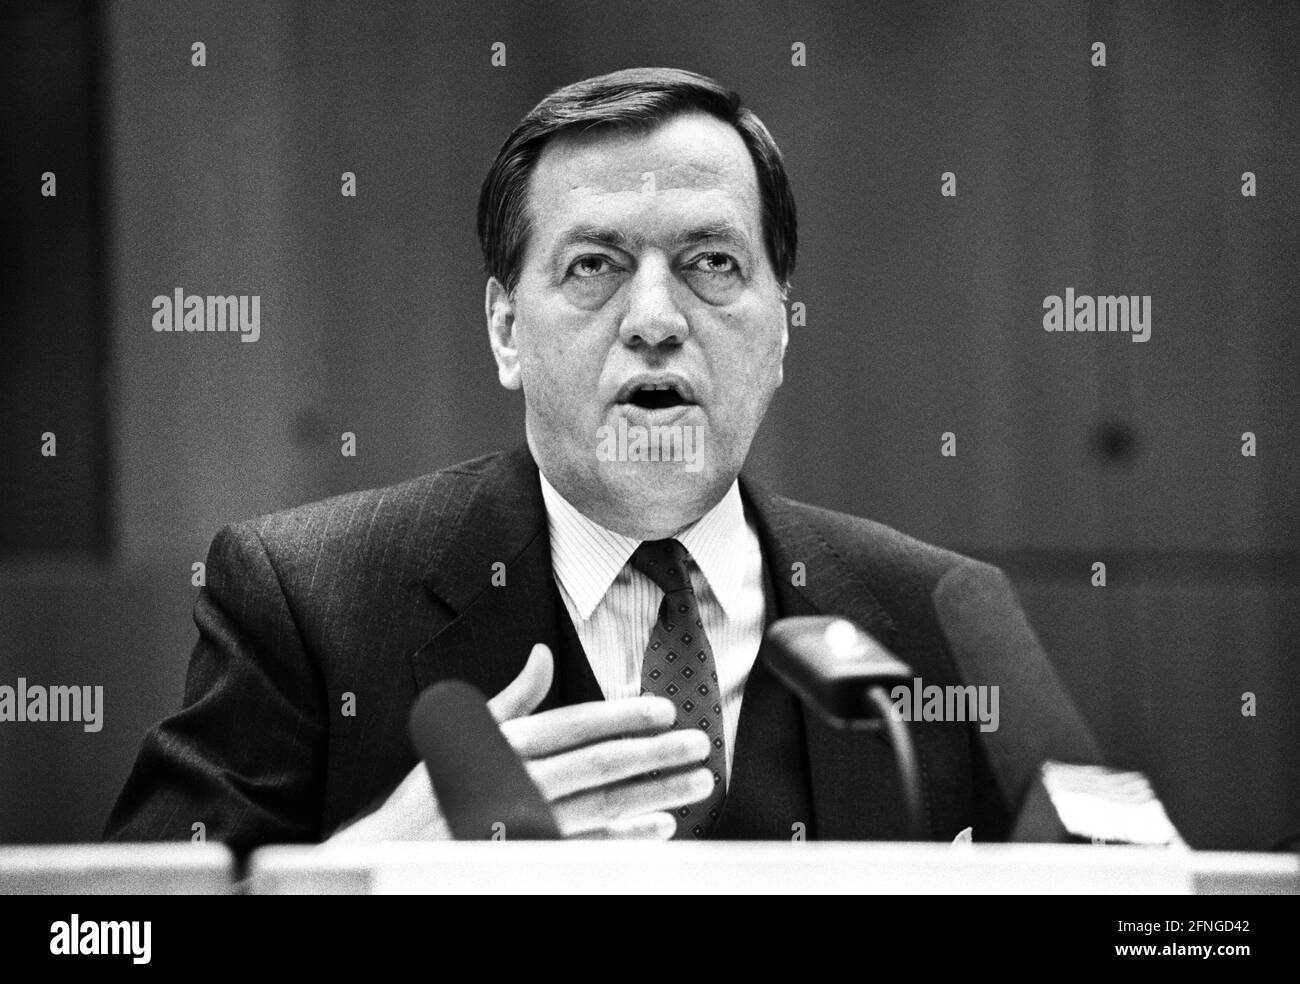 Germania, Francoforte, 29.03.1990. Archivio n.: 15-4-37 Deutsche Bank Conferenza stampa annuale Foto: Hilmar Kopper, Presidente del Consiglio di Amministrazione [traduzione automatizzata] Foto Stock